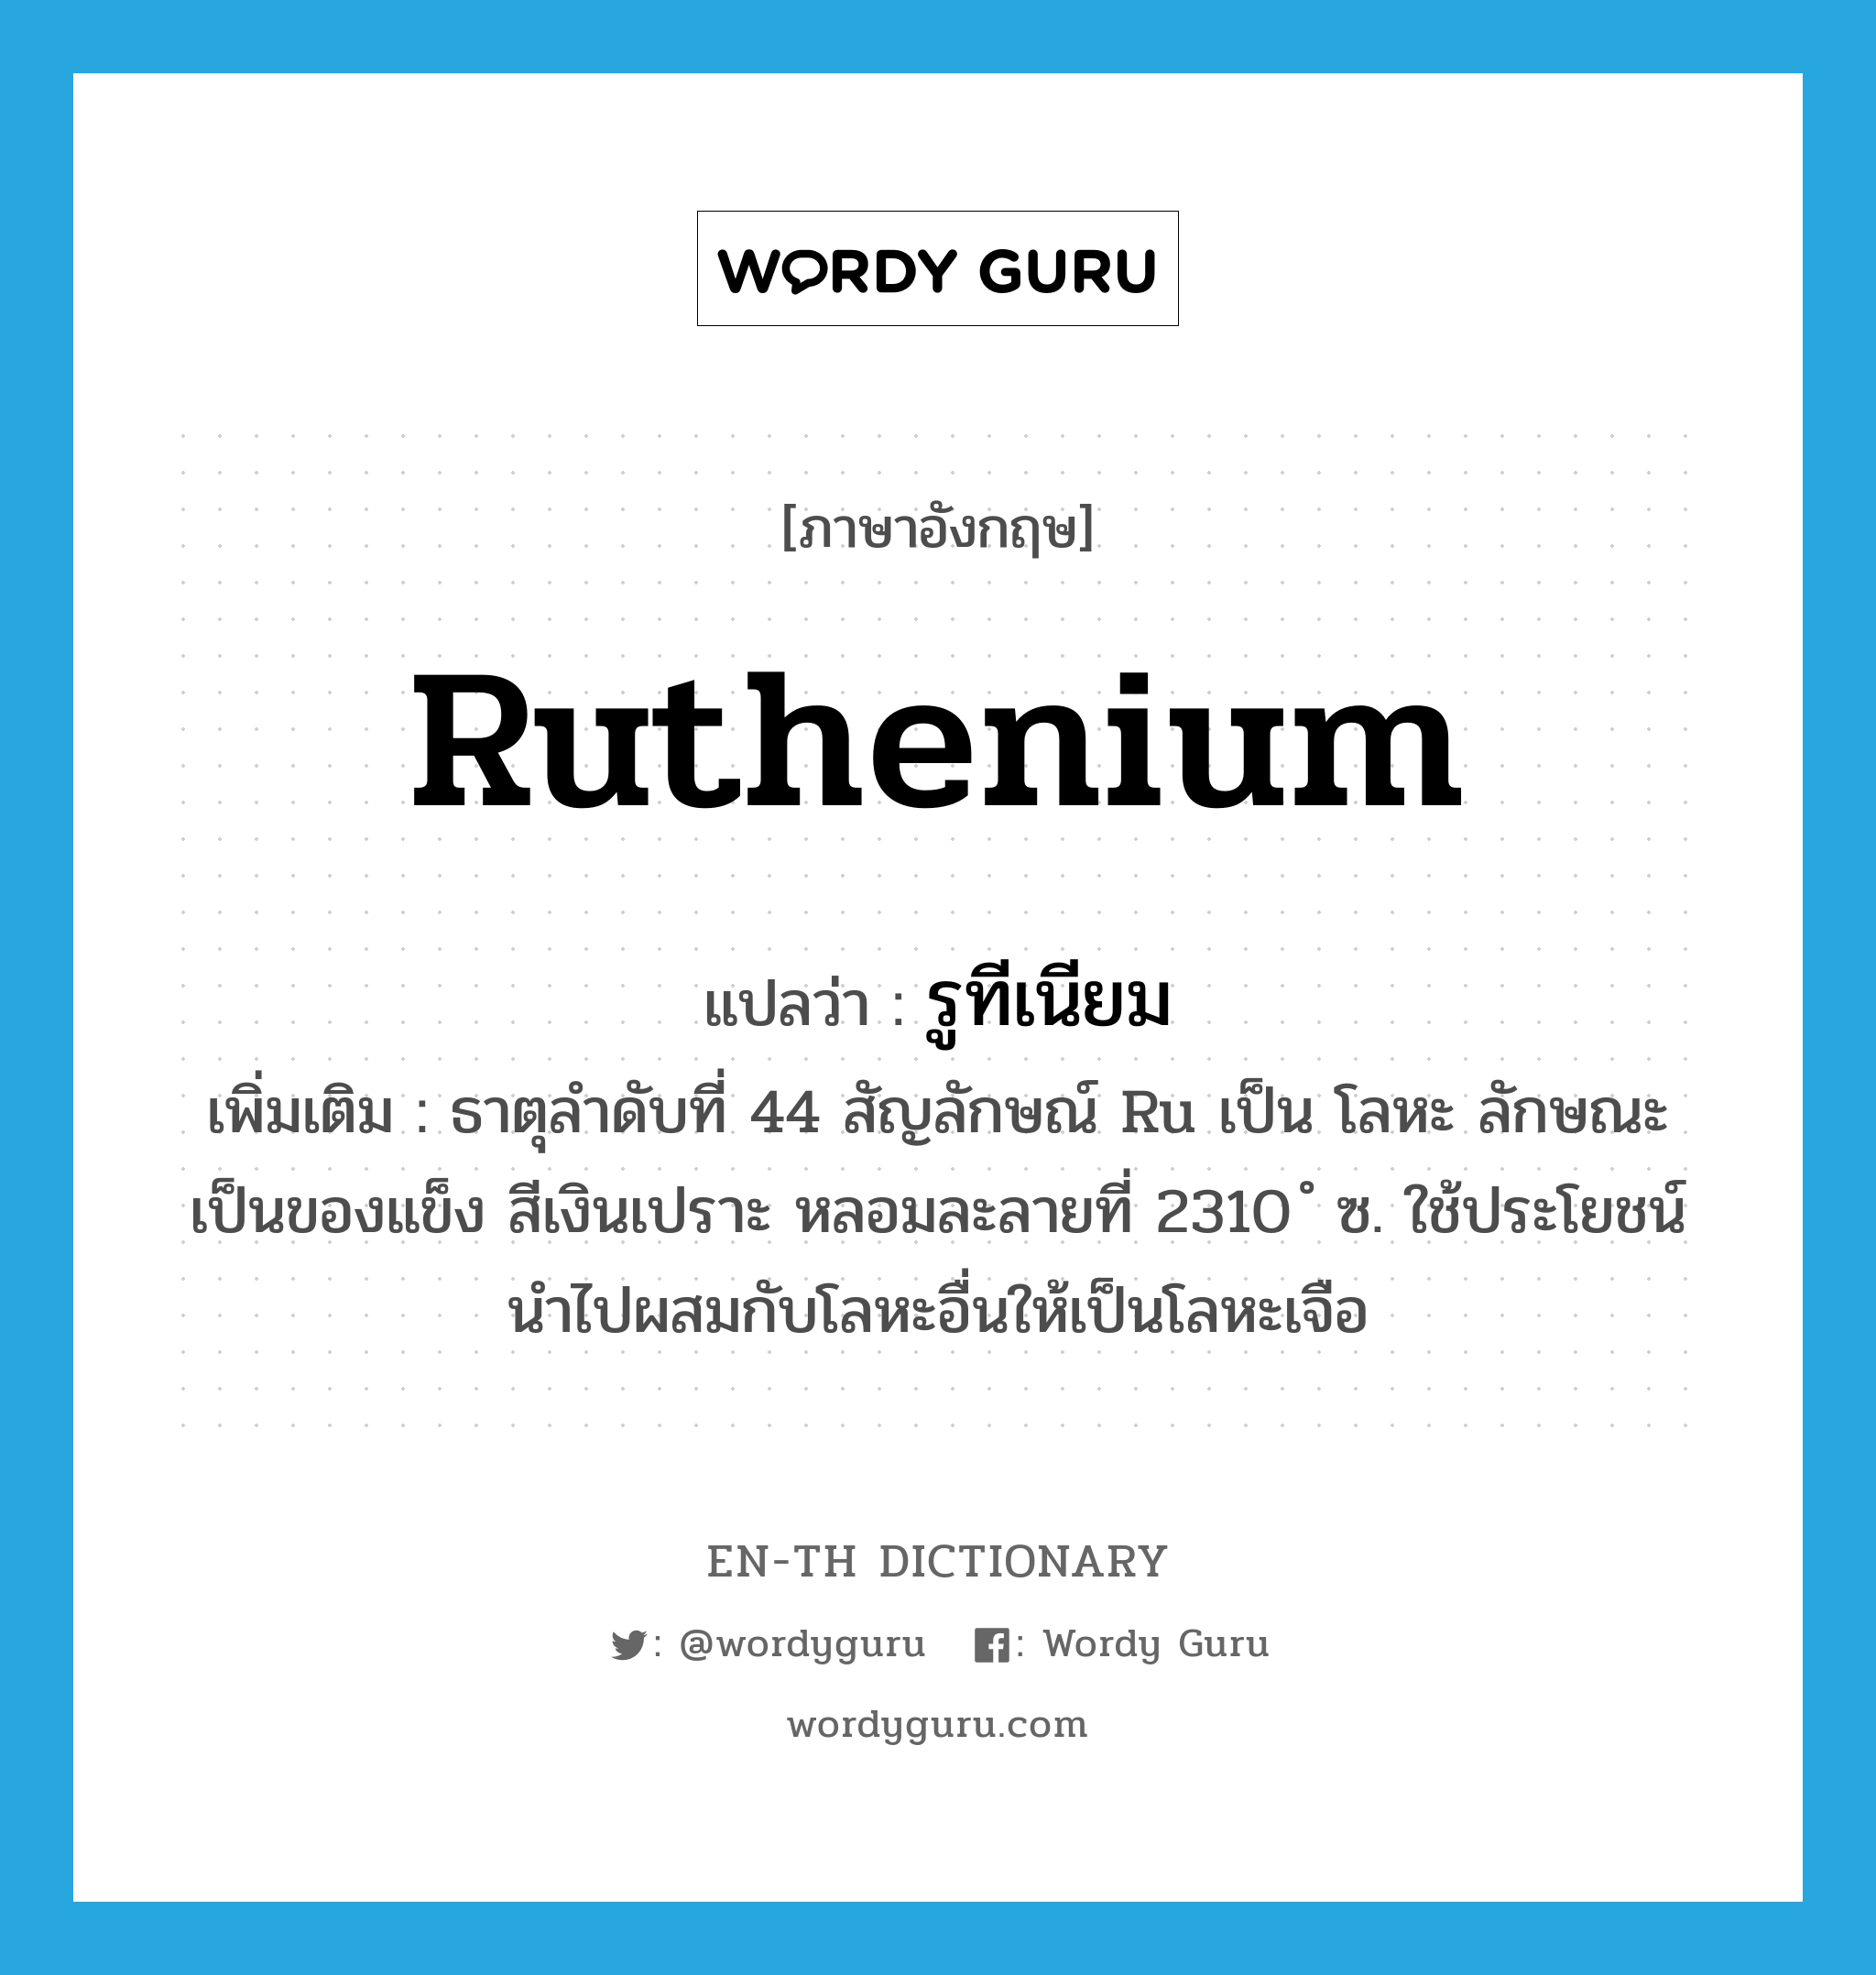 ruthenium แปลว่า?, คำศัพท์ภาษาอังกฤษ ruthenium แปลว่า รูทีเนียม ประเภท N เพิ่มเติม ธาตุลำดับที่ 44 สัญลักษณ์ Ru เป็น โลหะ ลักษณะเป็นของแข็ง สีเงินเปราะ หลอมละลายที่ 2310 ํ ซ. ใช้ประโยชน์นำไปผสมกับโลหะอื่นให้เป็นโลหะเจือ หมวด N